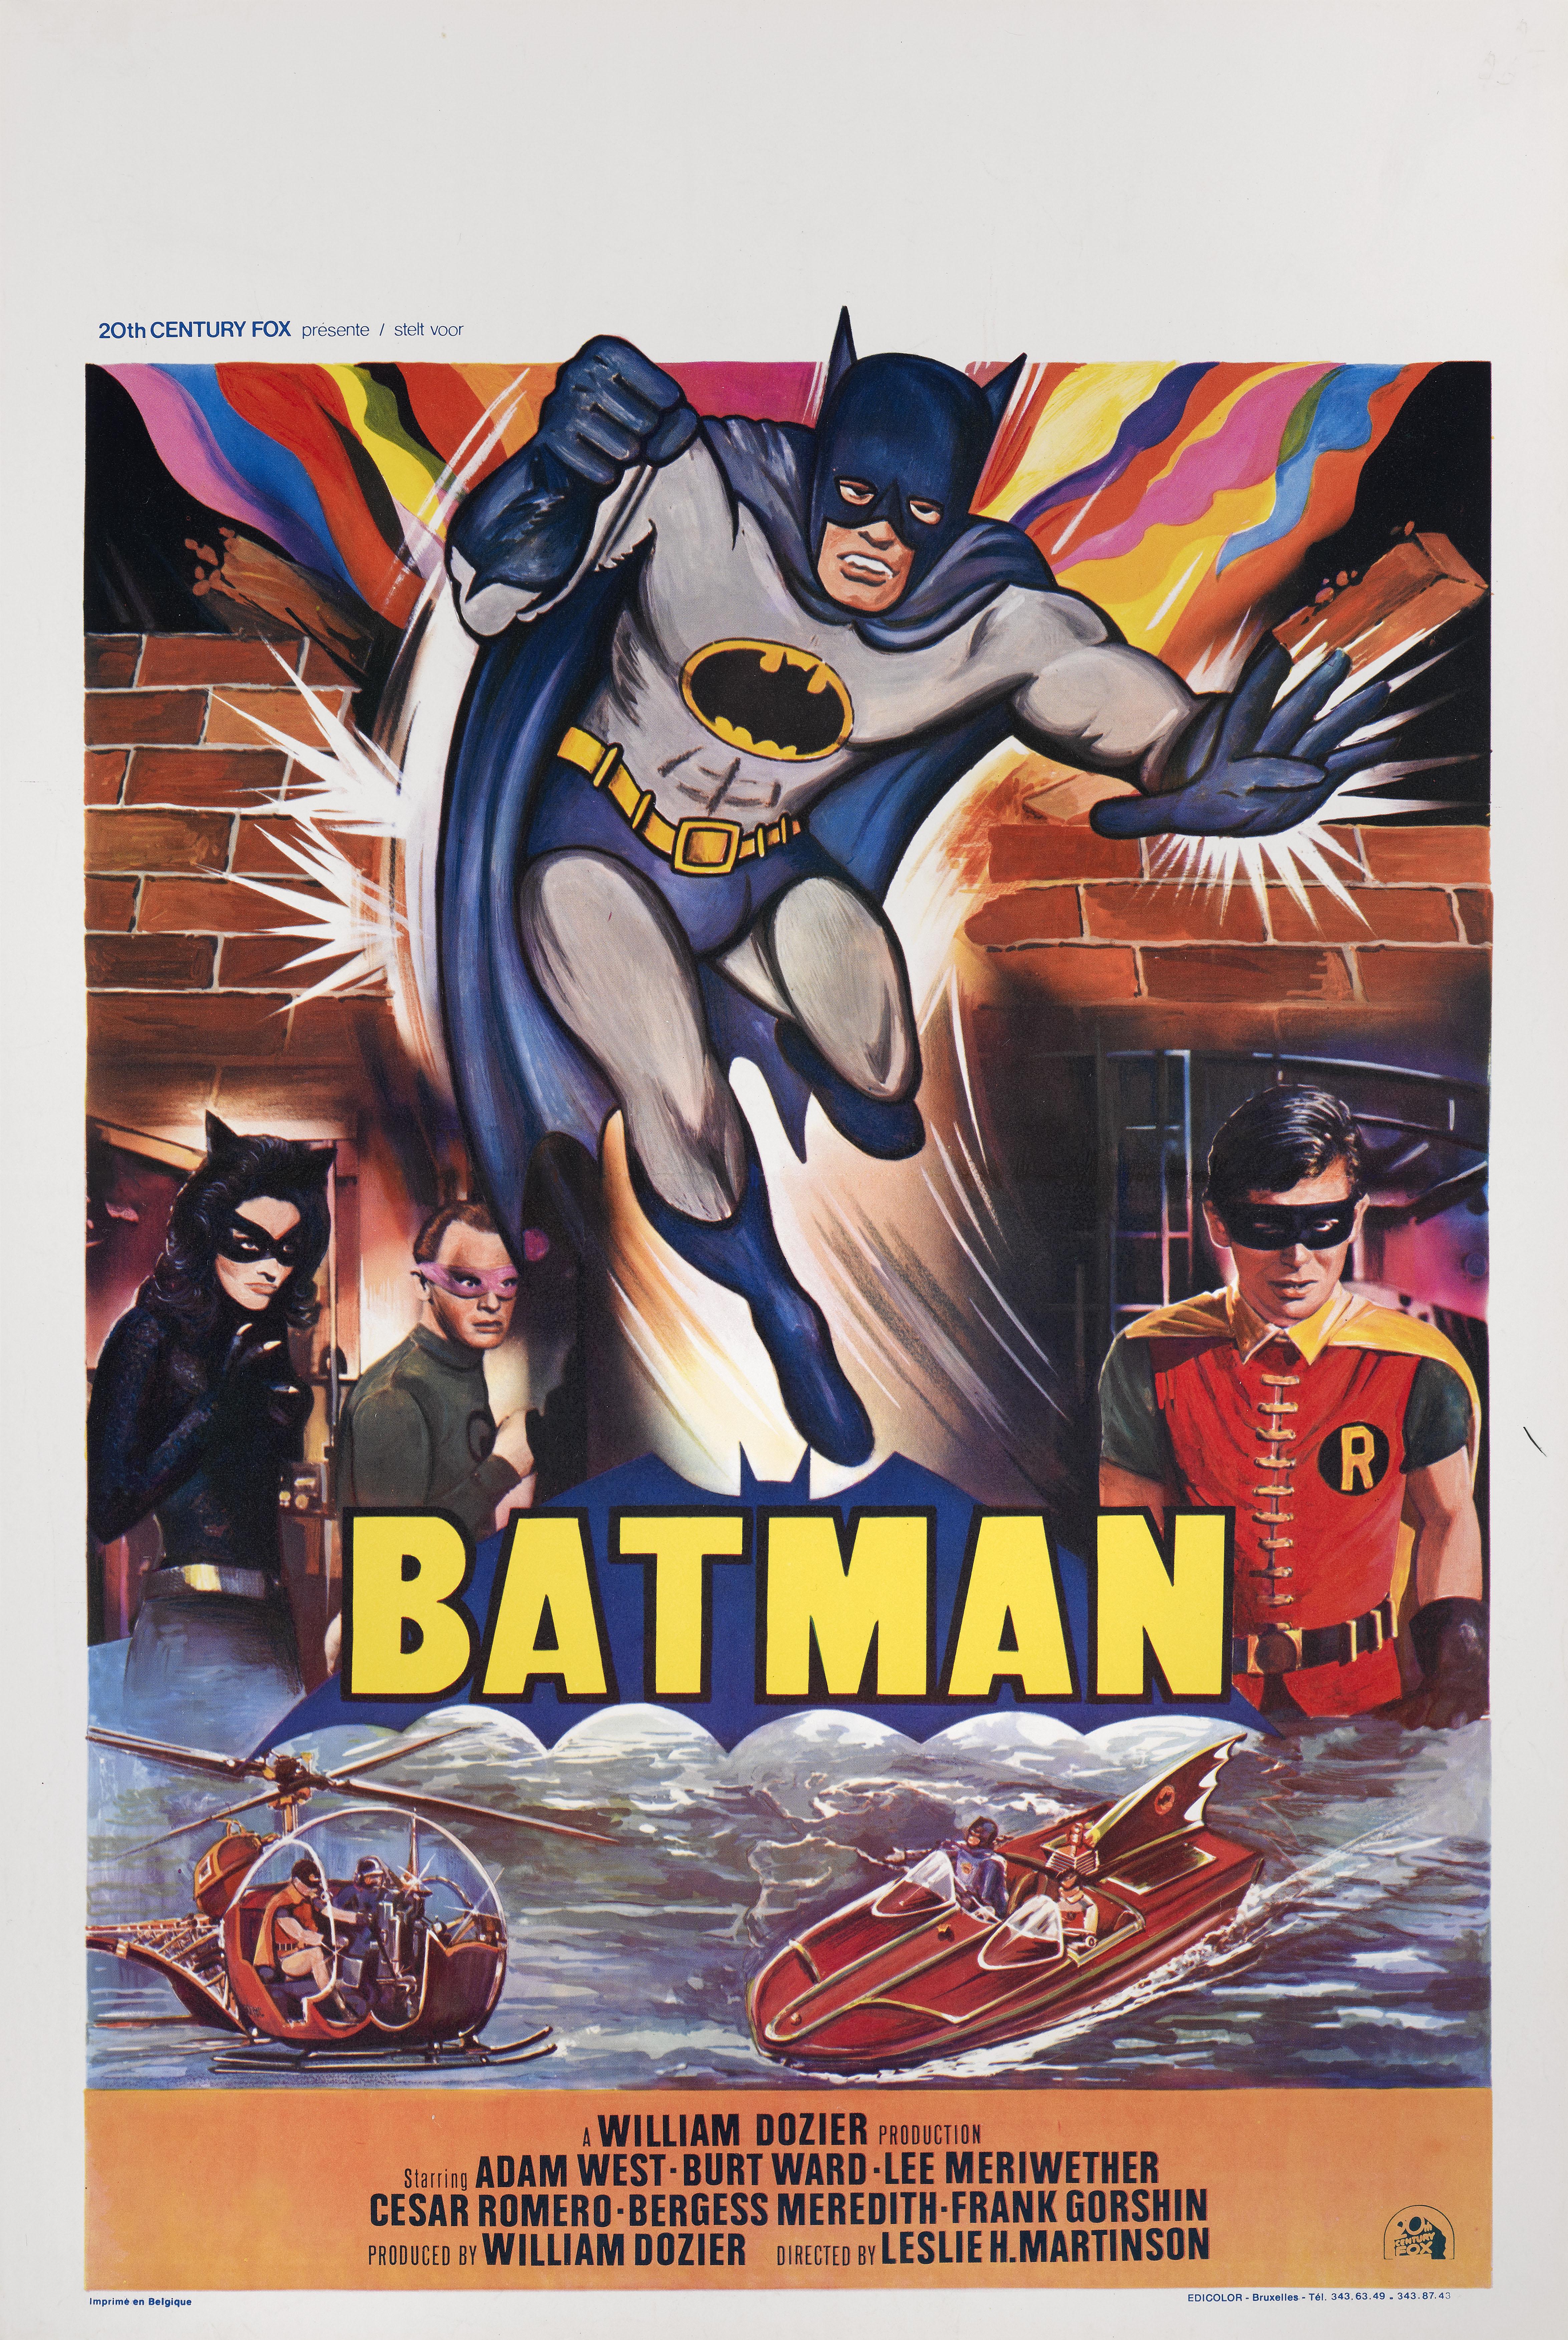 Affiche originale belge pour le film Batman (1966) de Leslie Martinson avec Adam West dans le rôle de Batman et Burt Ward dans celui de Robin.
Ce poster est soutenu par du papier et sera expédié à plat par Federal Express.